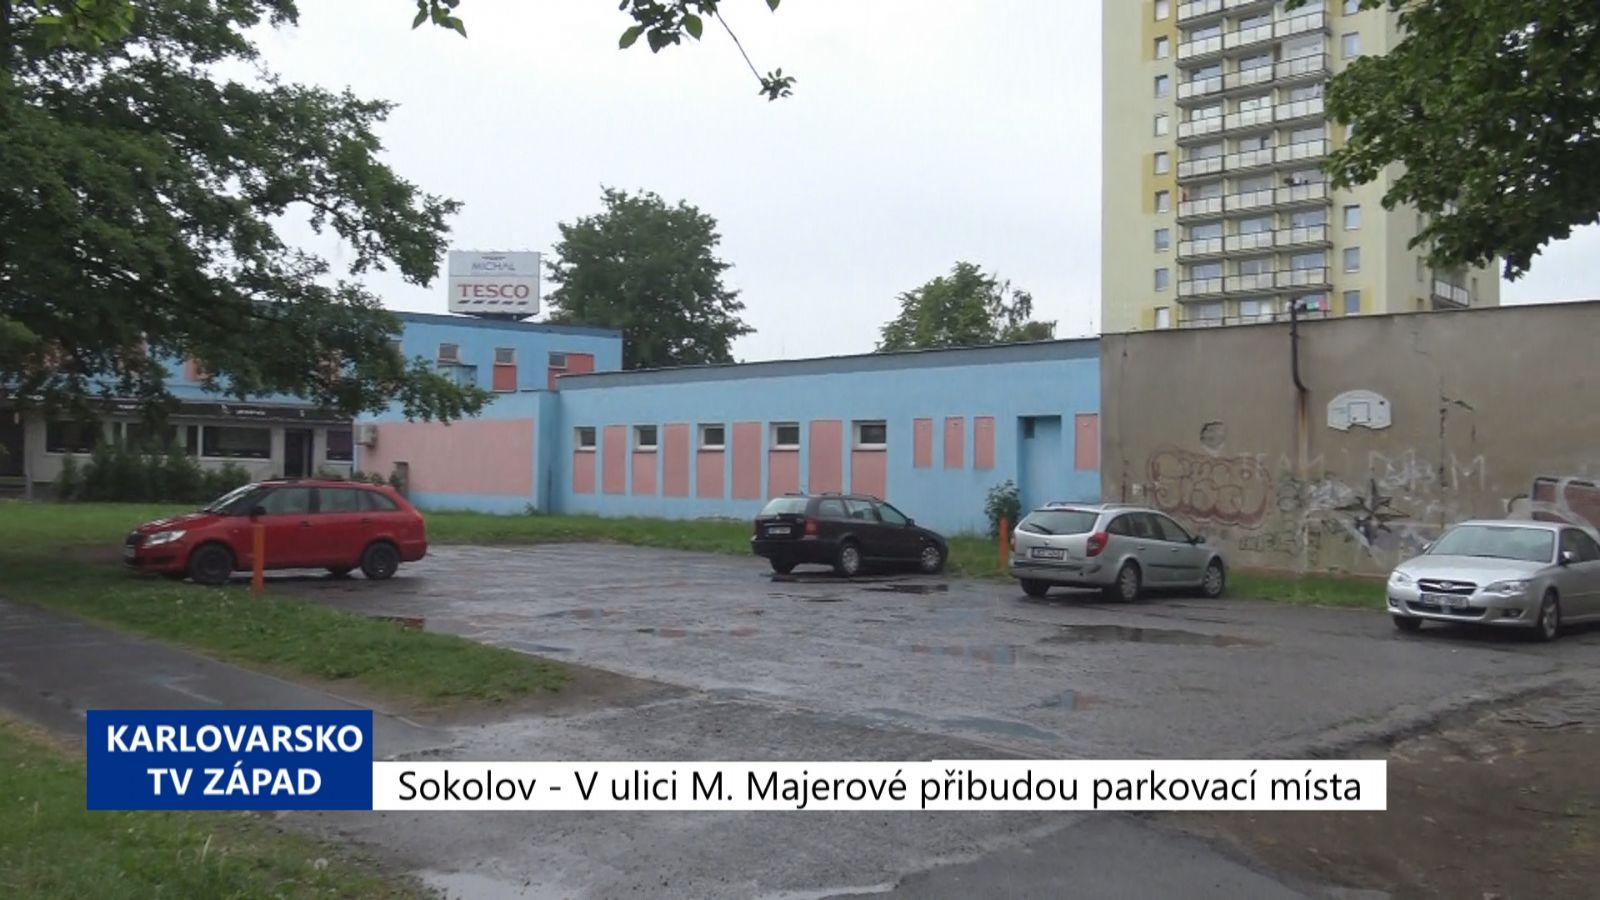 Sokolov: V ulici Marie Majerové přibudou parkovací místa (TV Západ)